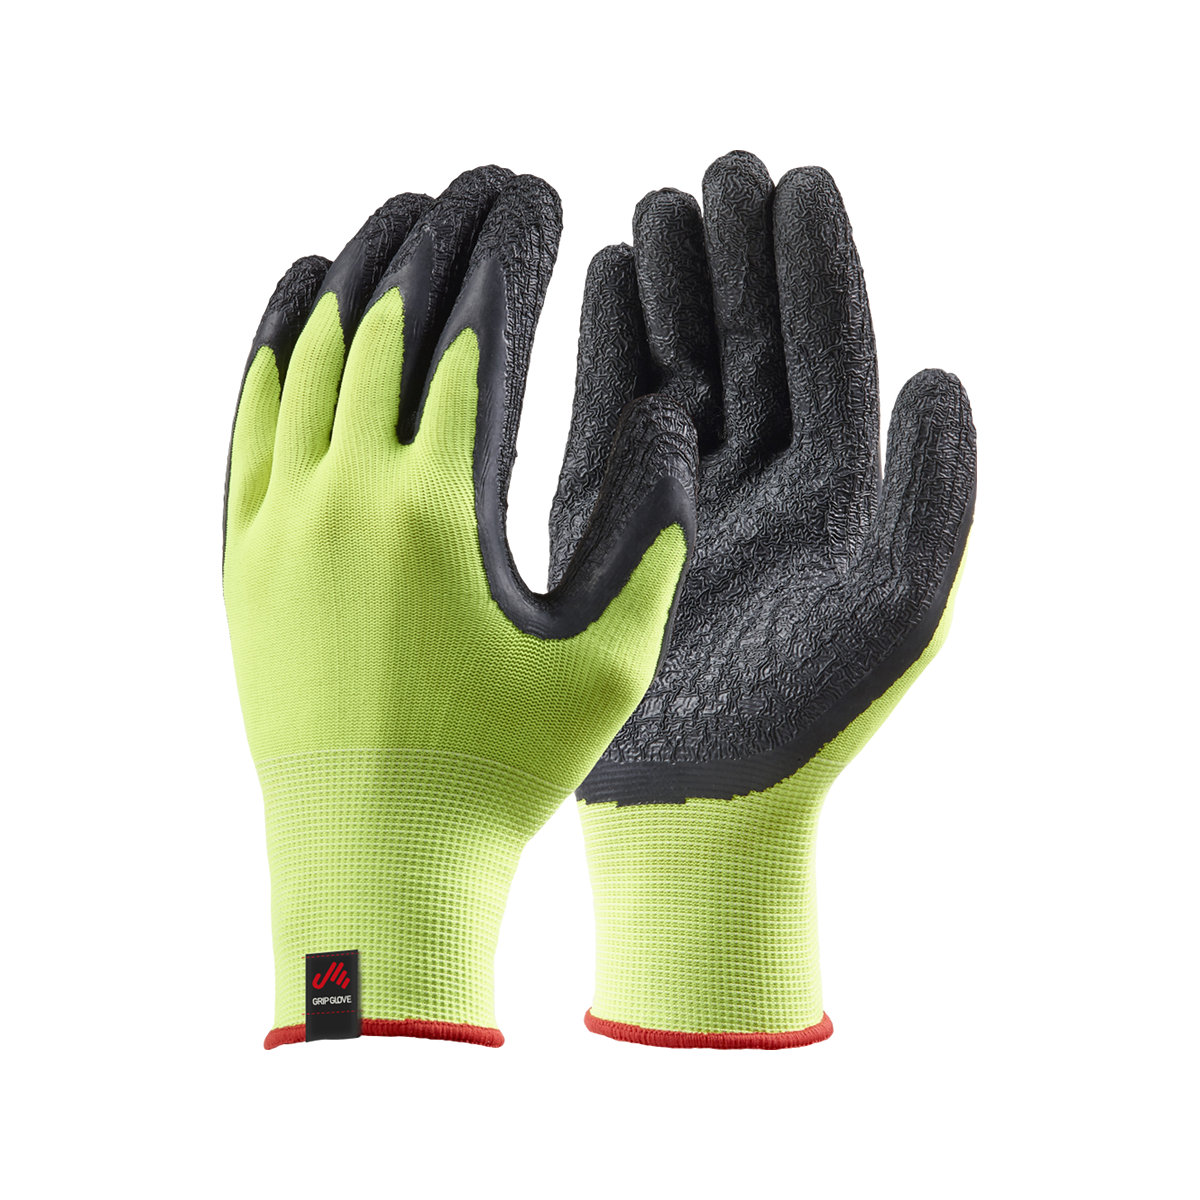 Musto Dipped Grip gants de voile jaune fluo, set de 3, taille S